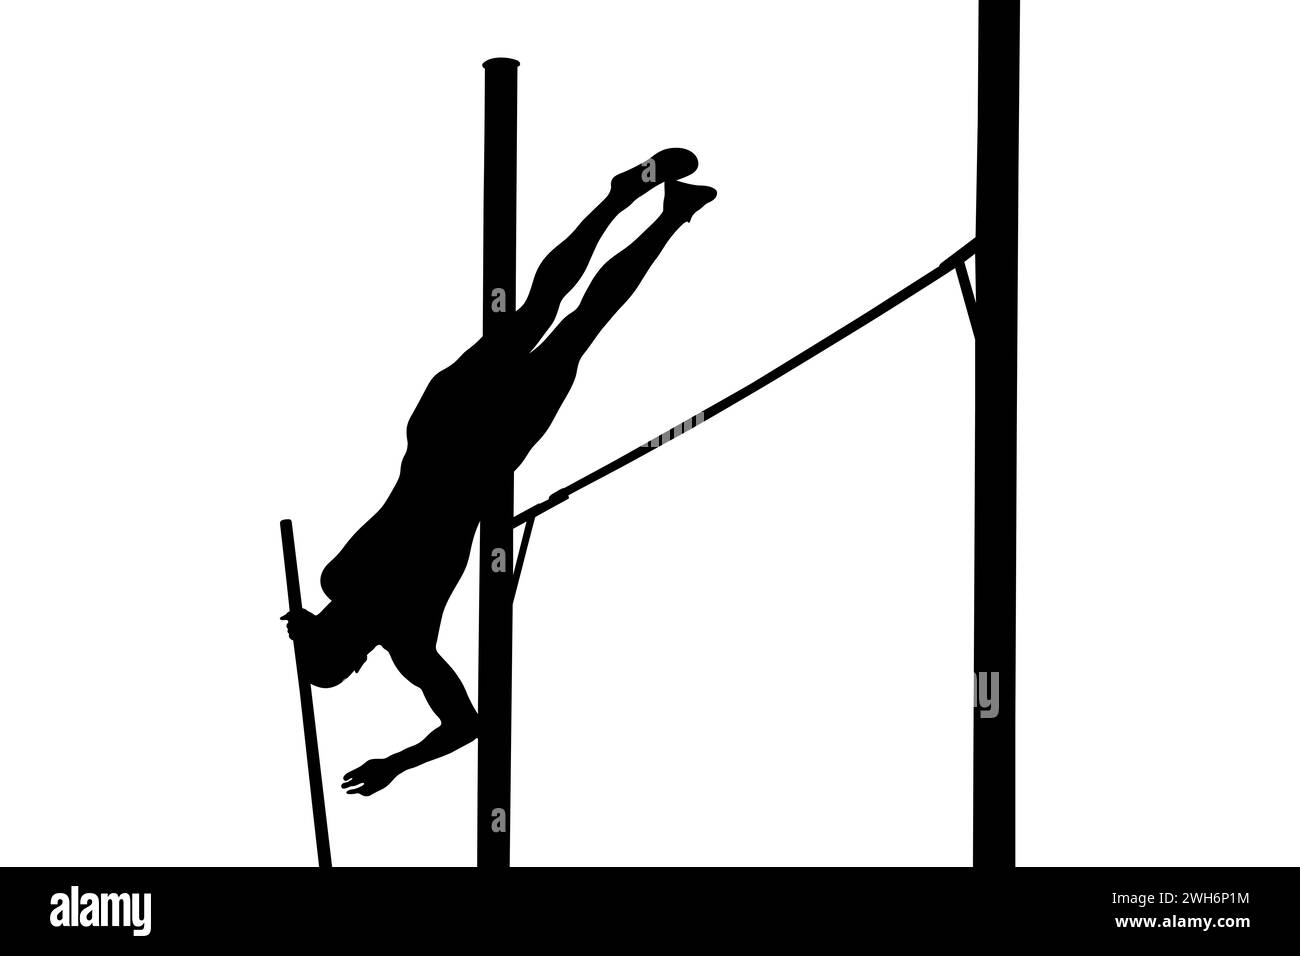 Männlicher Athlet mitten in der Luft bei einem Stabhochsprung-Event, zeigt Stärke und Agilität, schwarze Silhouette auf weißem Hintergrund Stockfoto